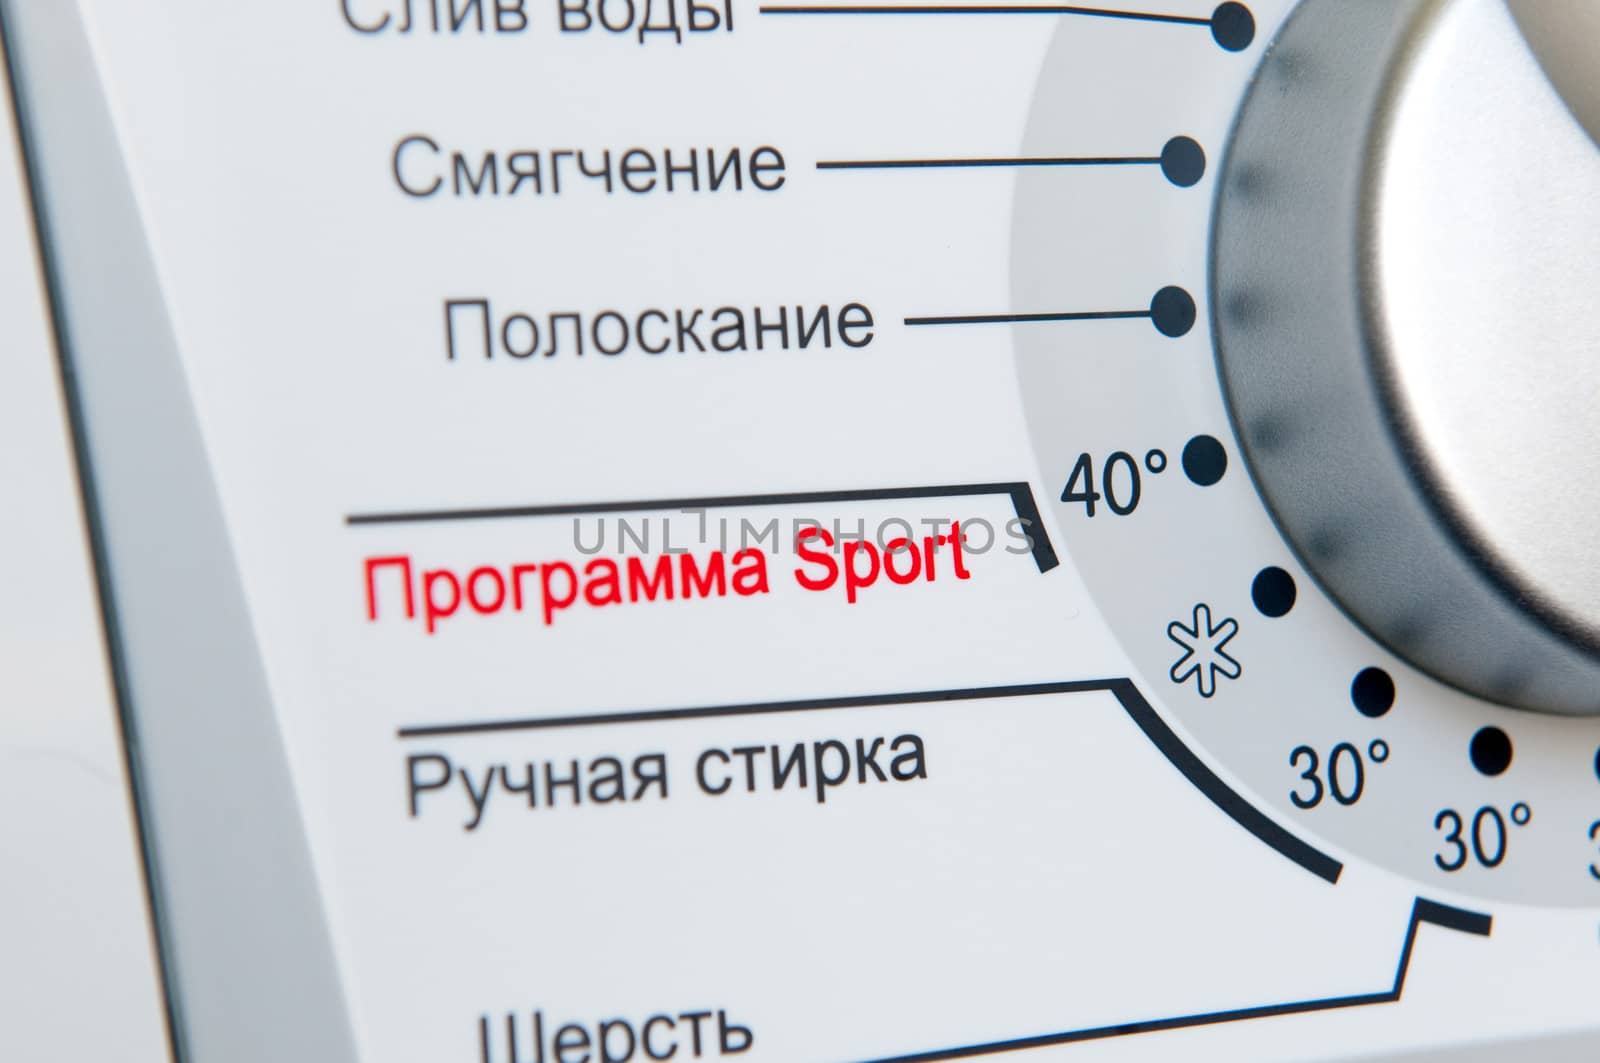 Washing machine program dial (russian) close-up by lexan